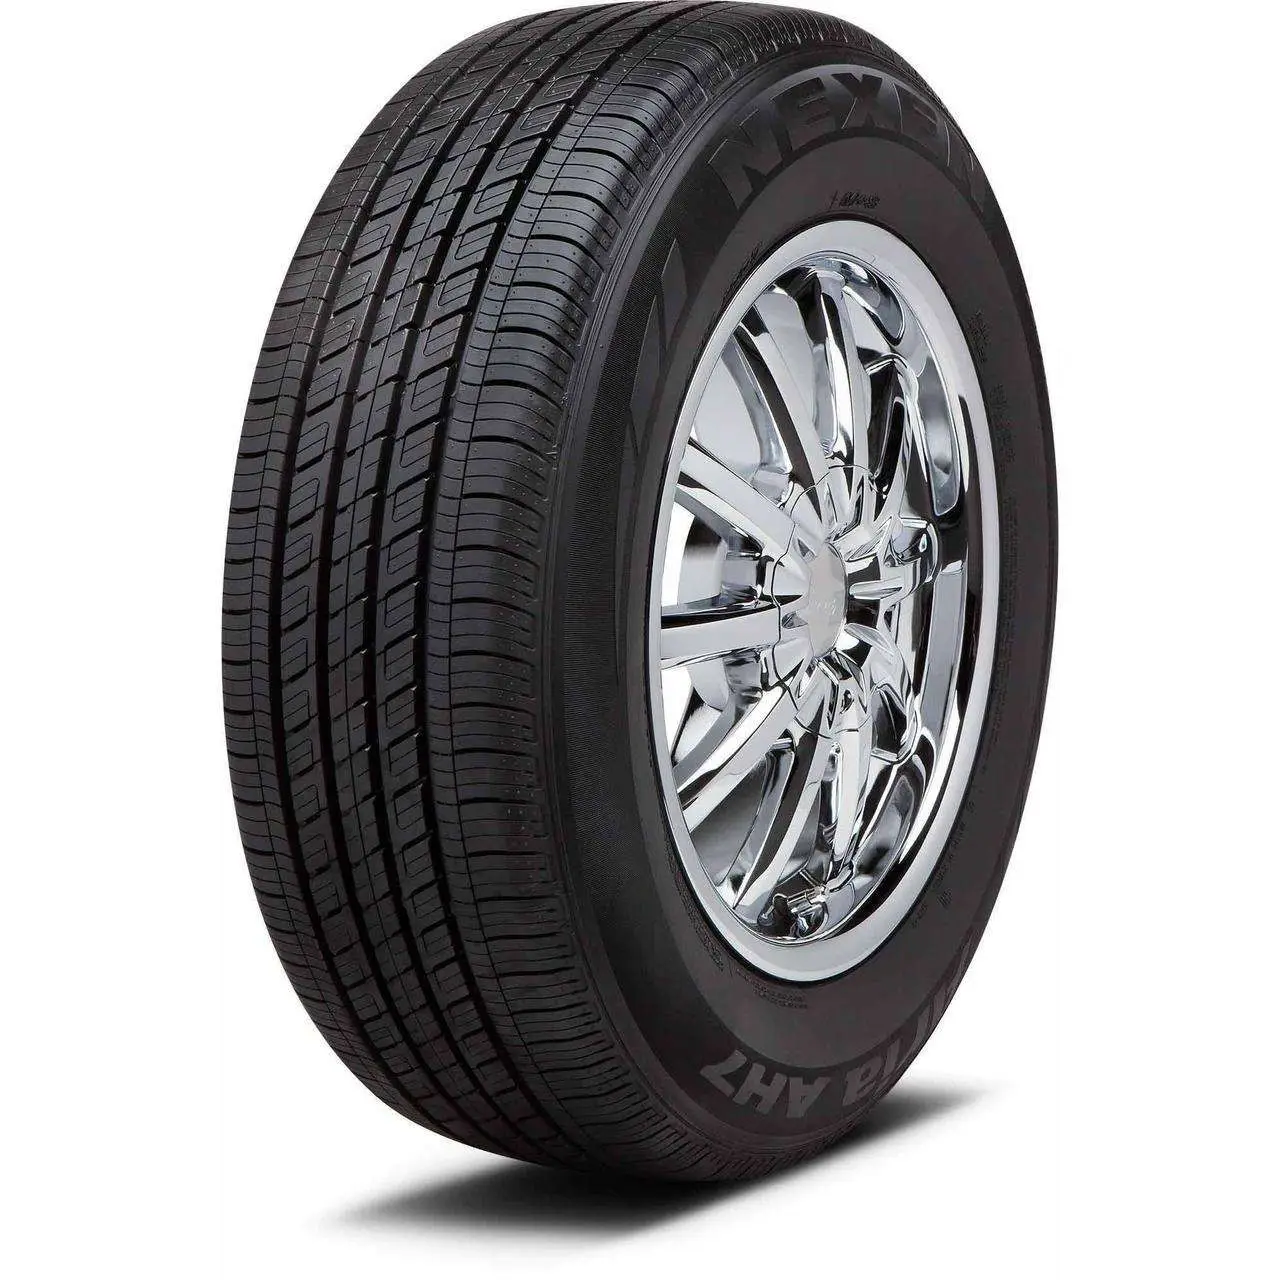 Perfetto pneumatici per auto usate pneumatici per veicoli pneumatici per camion per la vendita